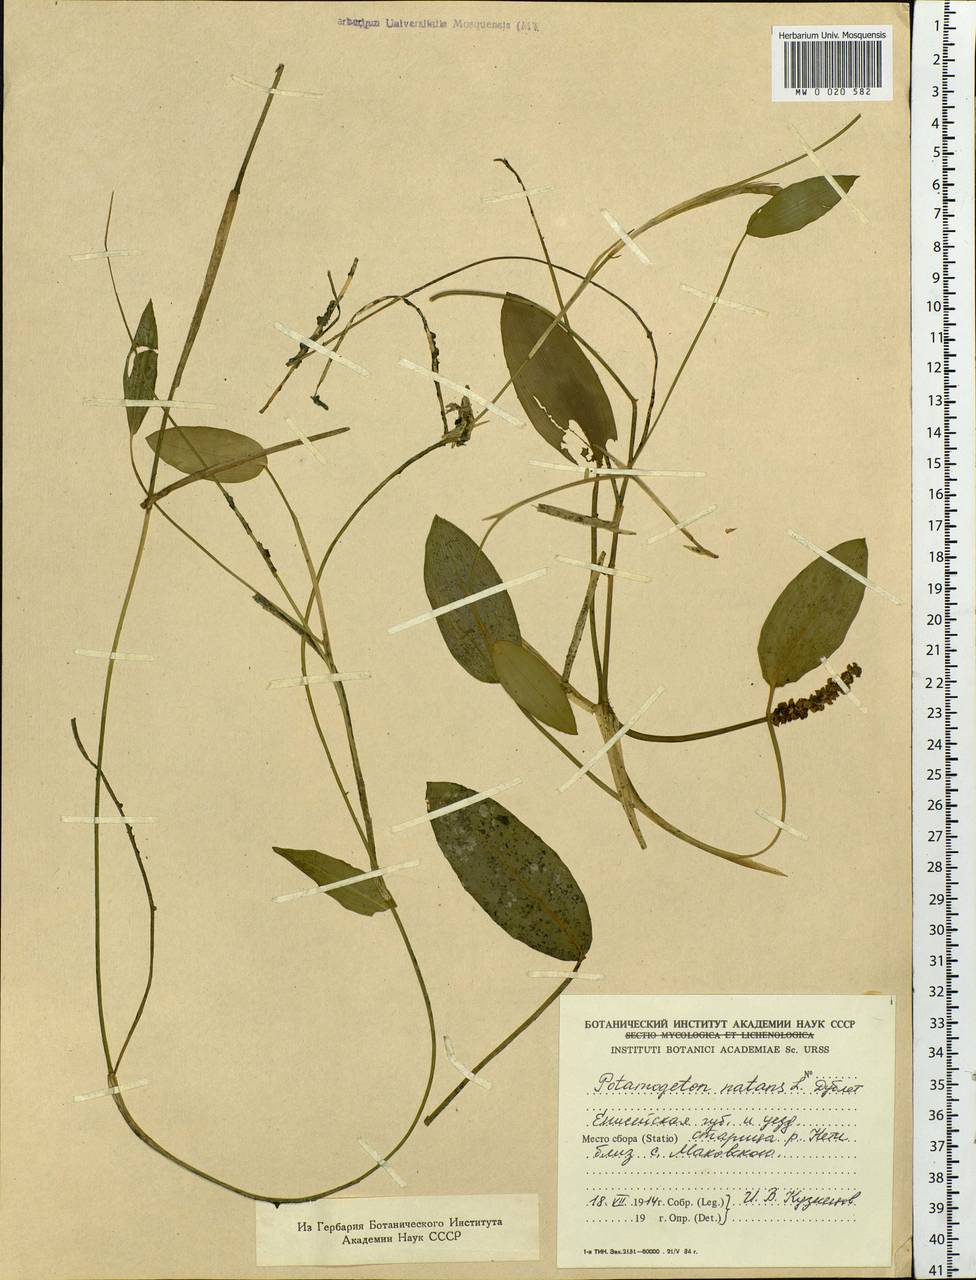 Potamogeton natans L., Siberia, Central Siberia (S3) (Russia)